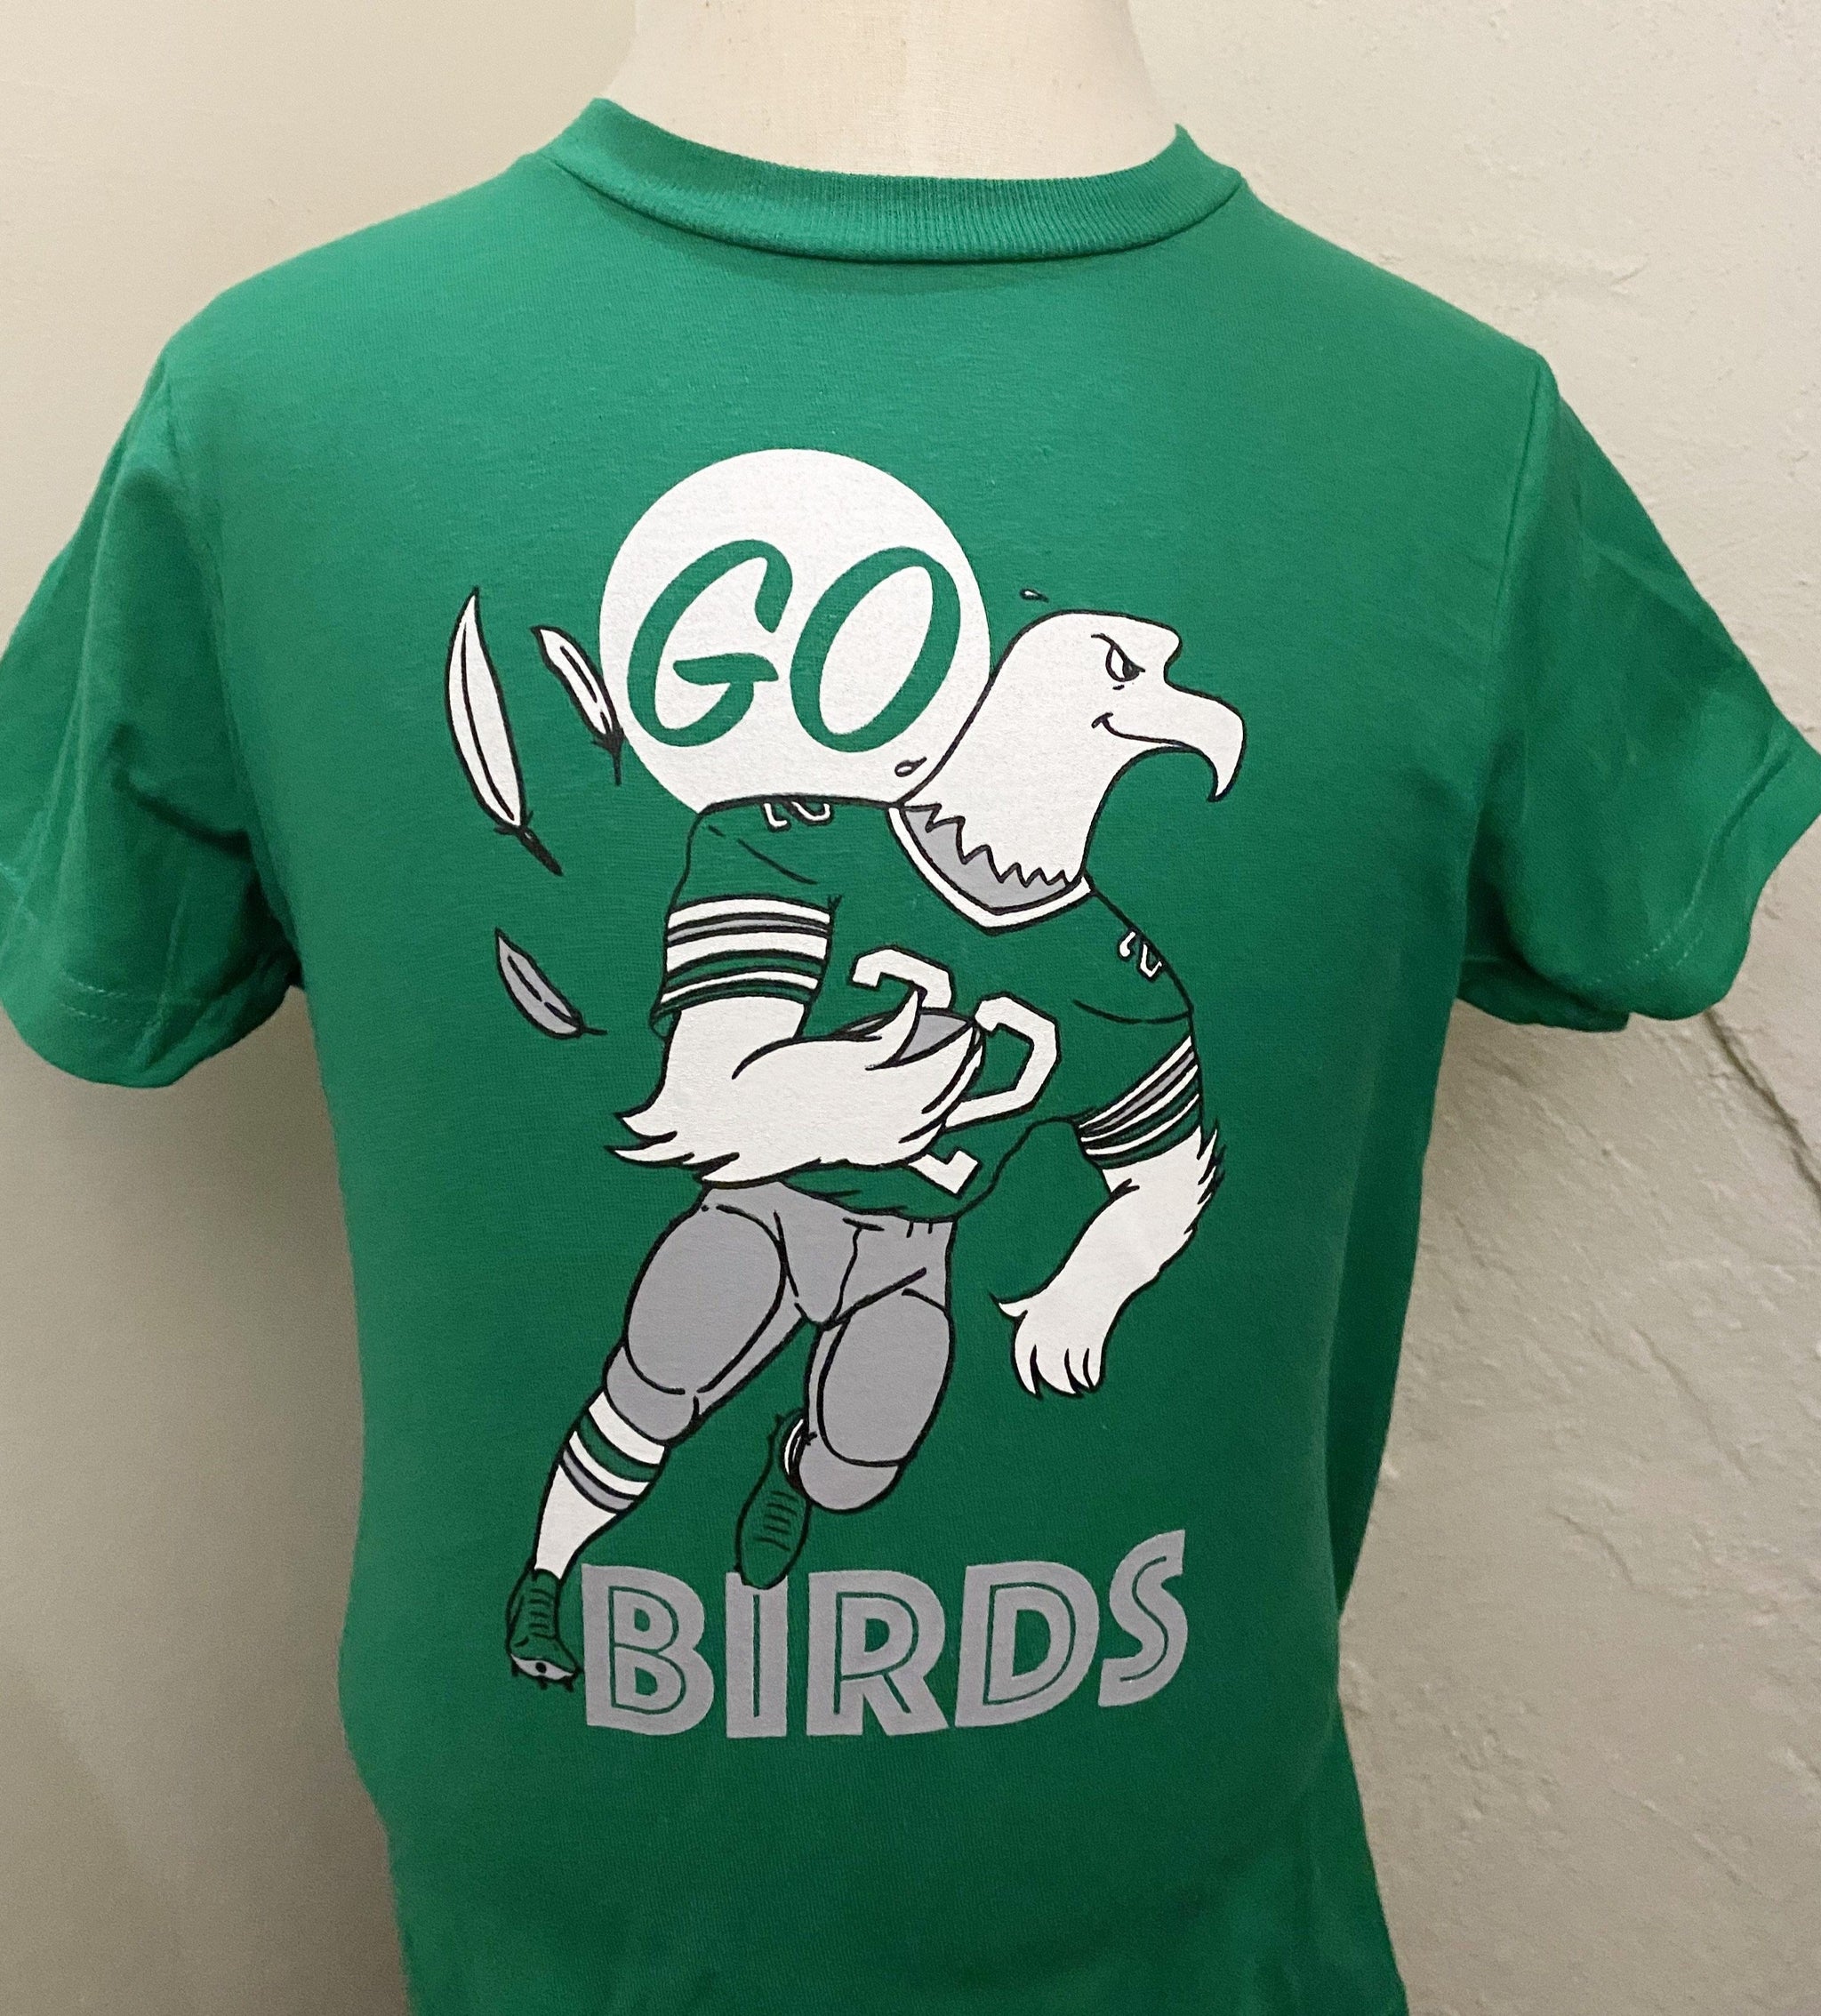 Go Birds Vintage Eagles T-Shirt